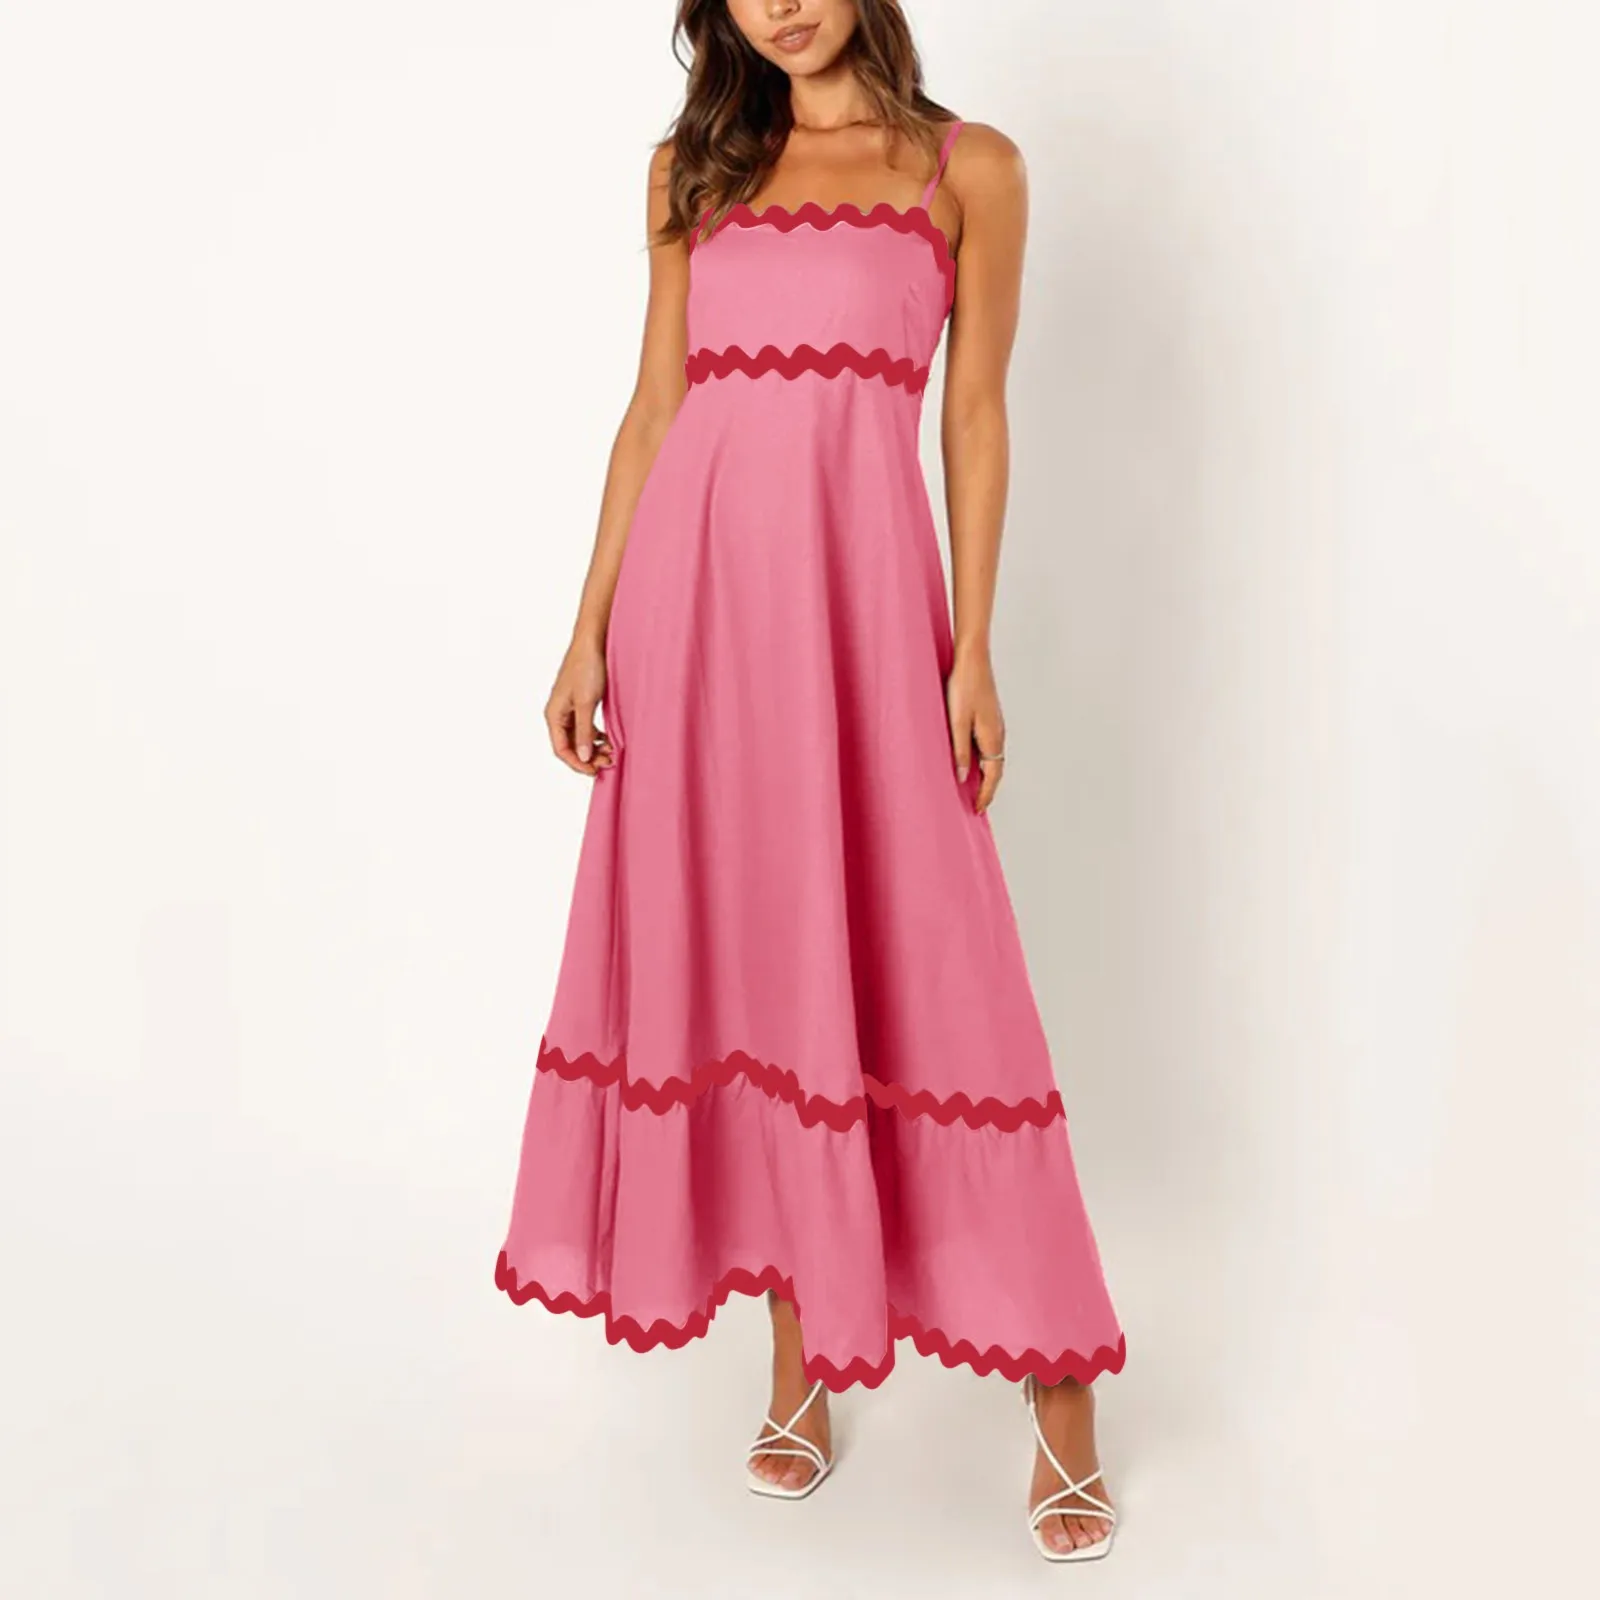 

Повседневное женское платье макси на бретелях-спагетти платья контрастных цветов с высокой талией элегантное свободное летнее пляжное женское длинное платье халат